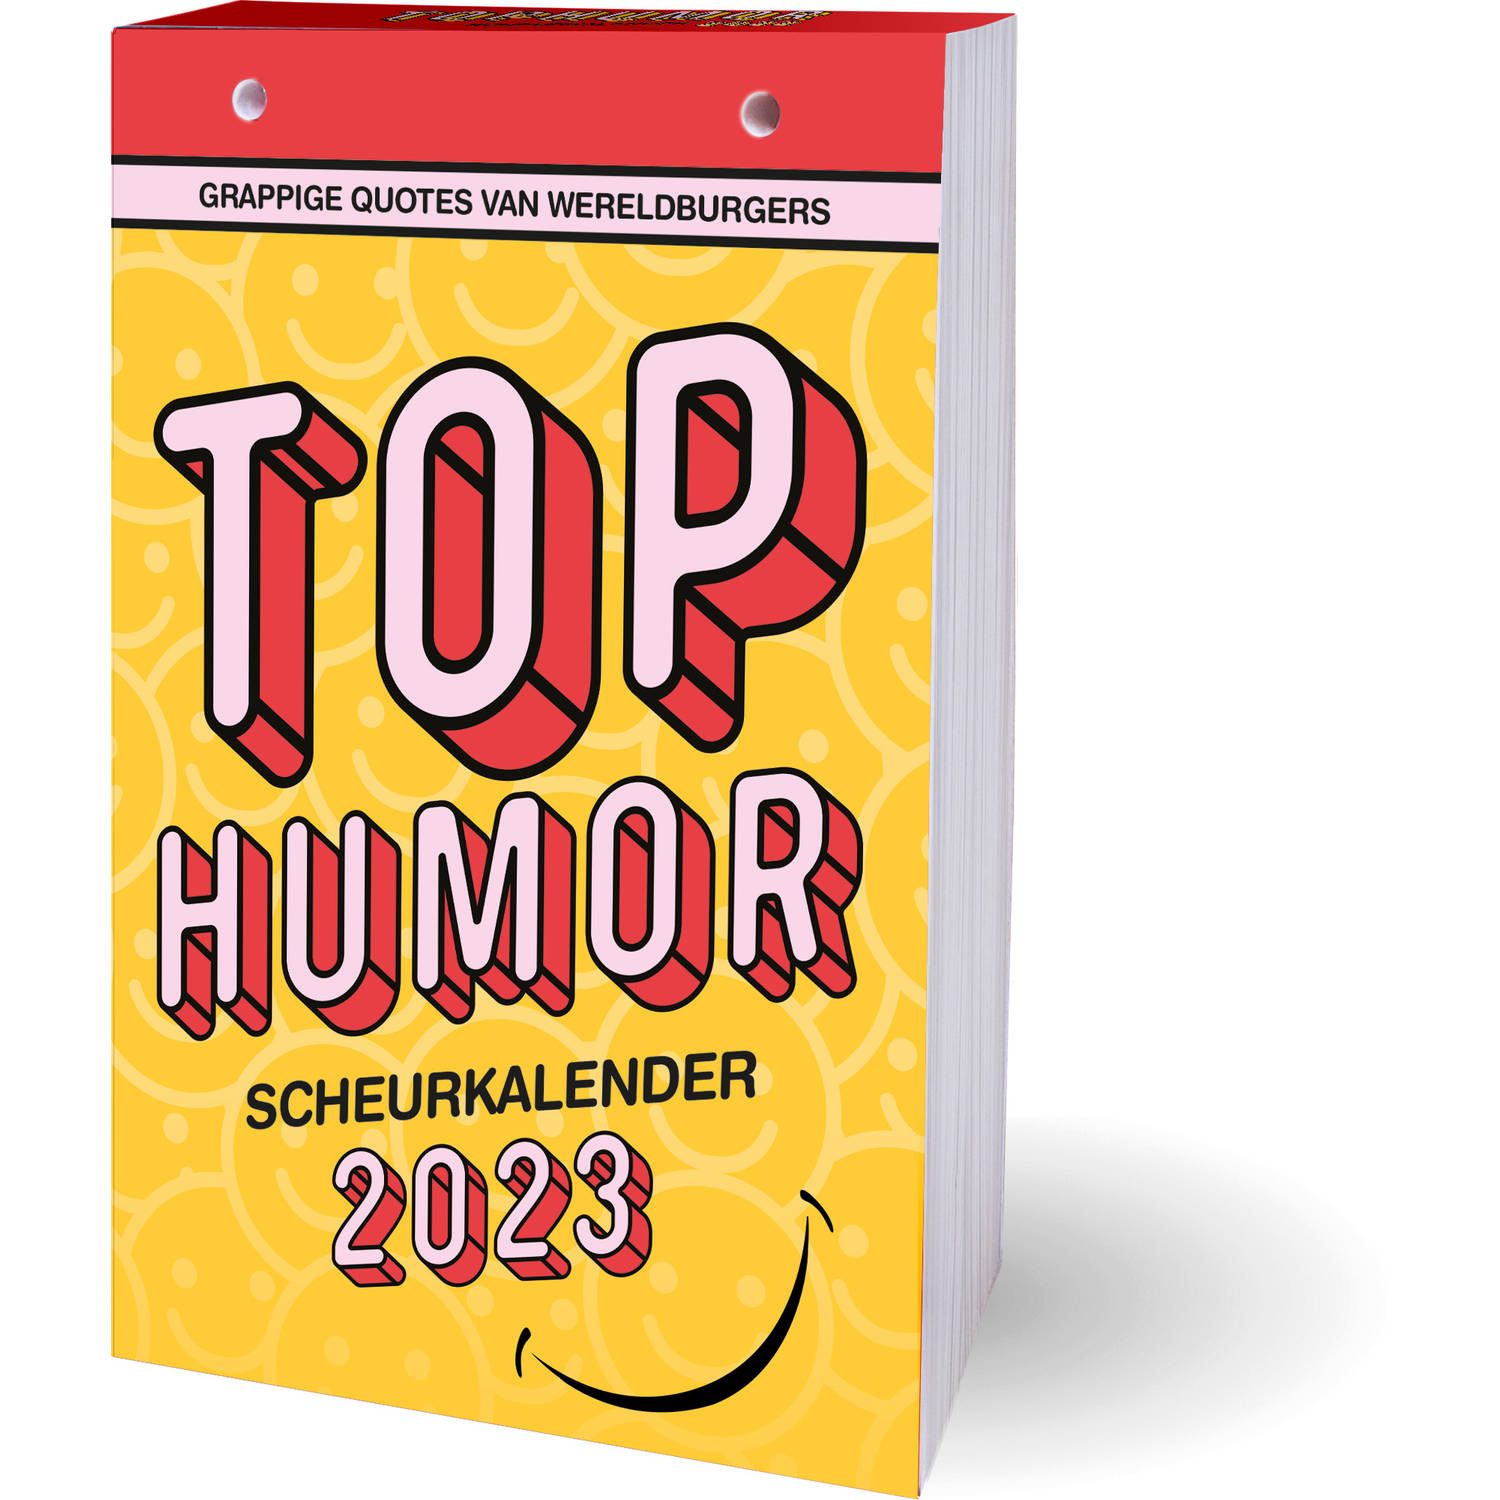 Top Humor Scheurkalender 2023